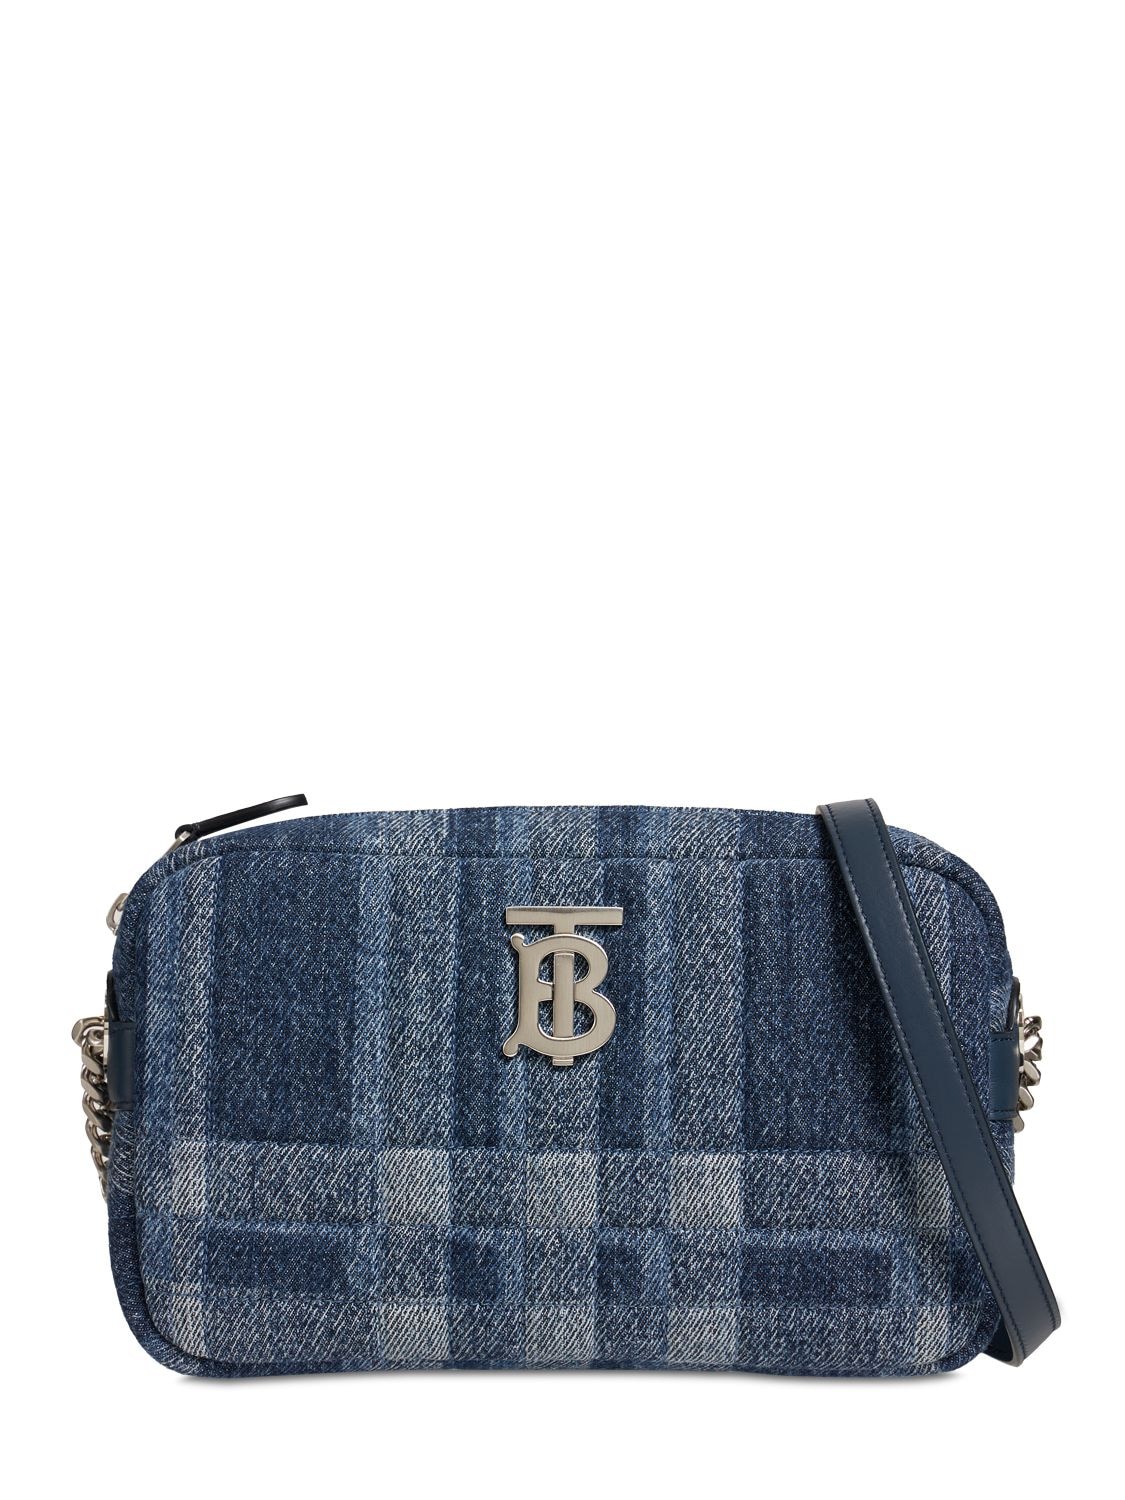 Burberry - Small lola cotton denim camera bag - Blue | Luisaviaroma